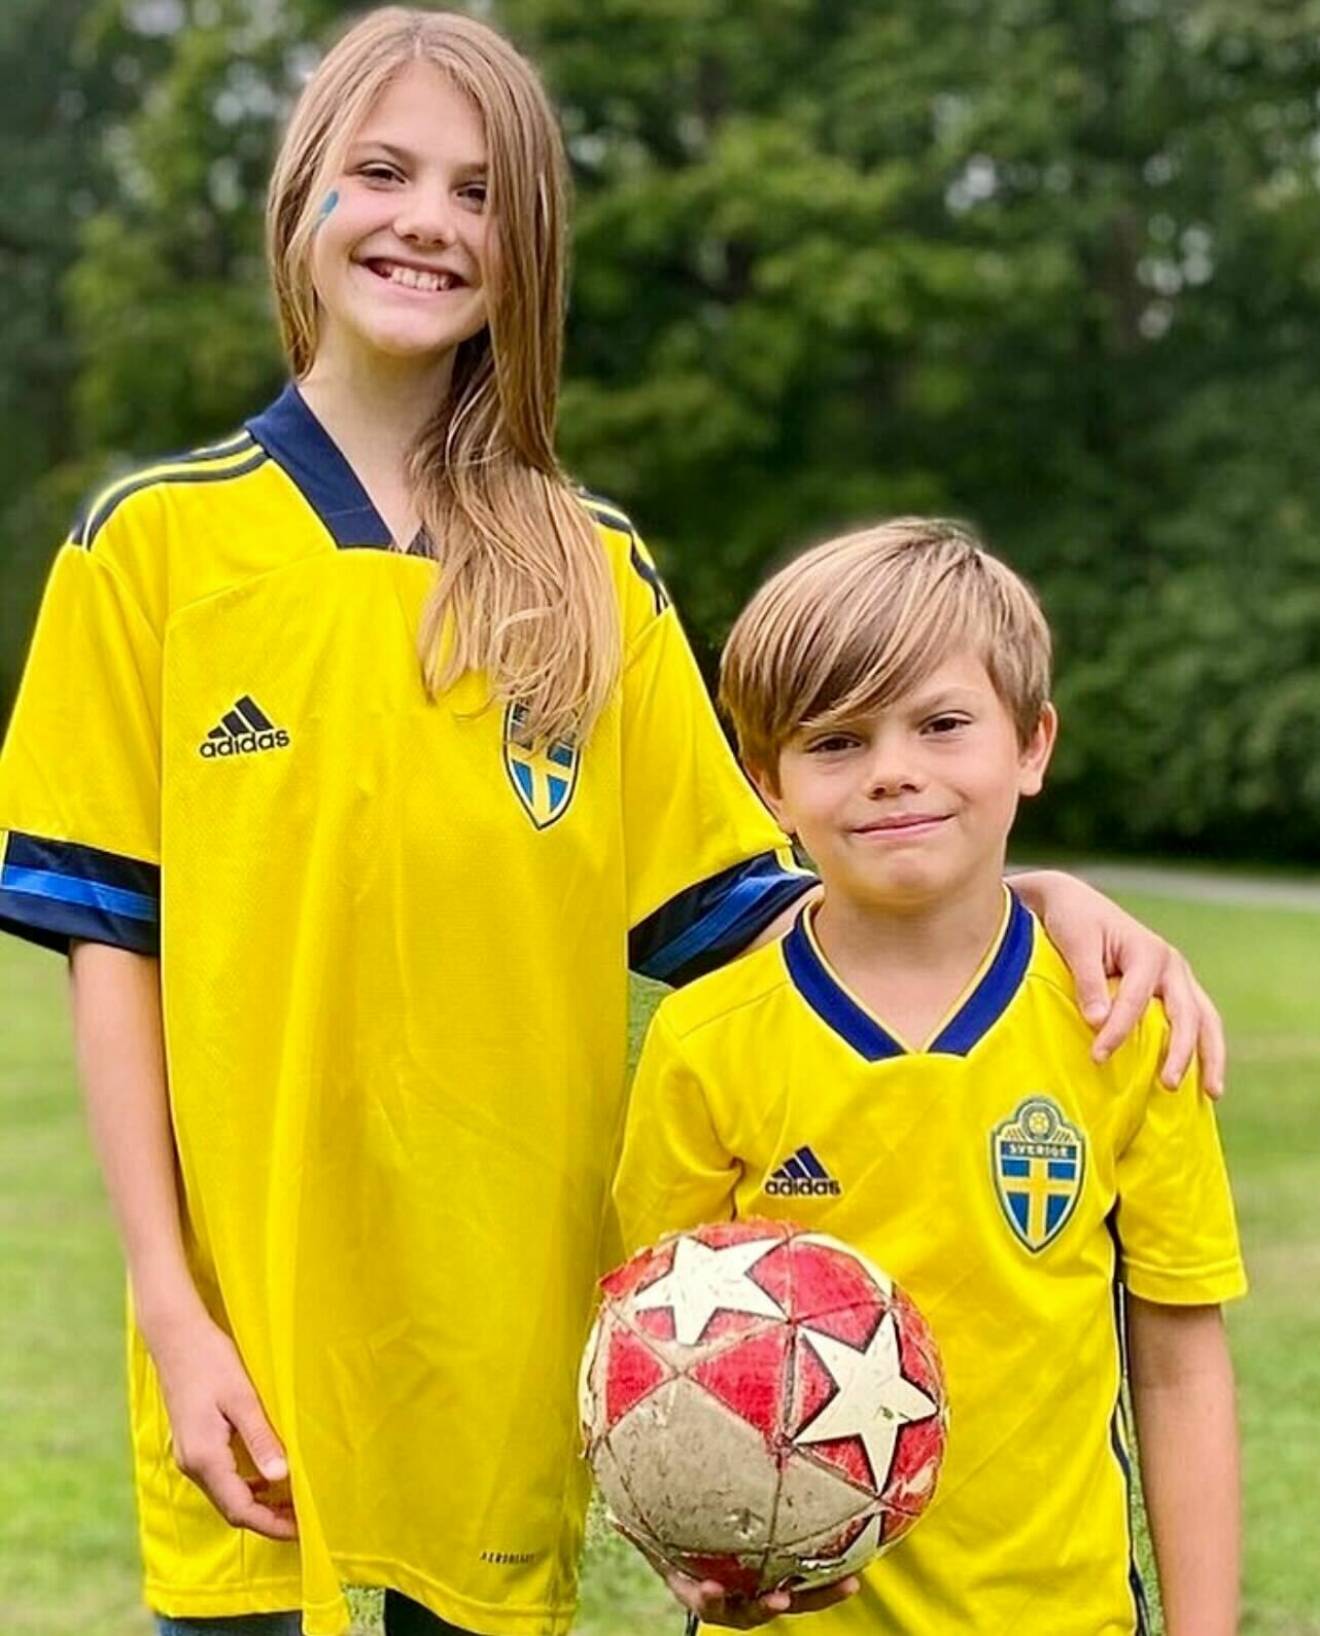 Prinsessan Estelle och prins Oscar i fotbollströjor